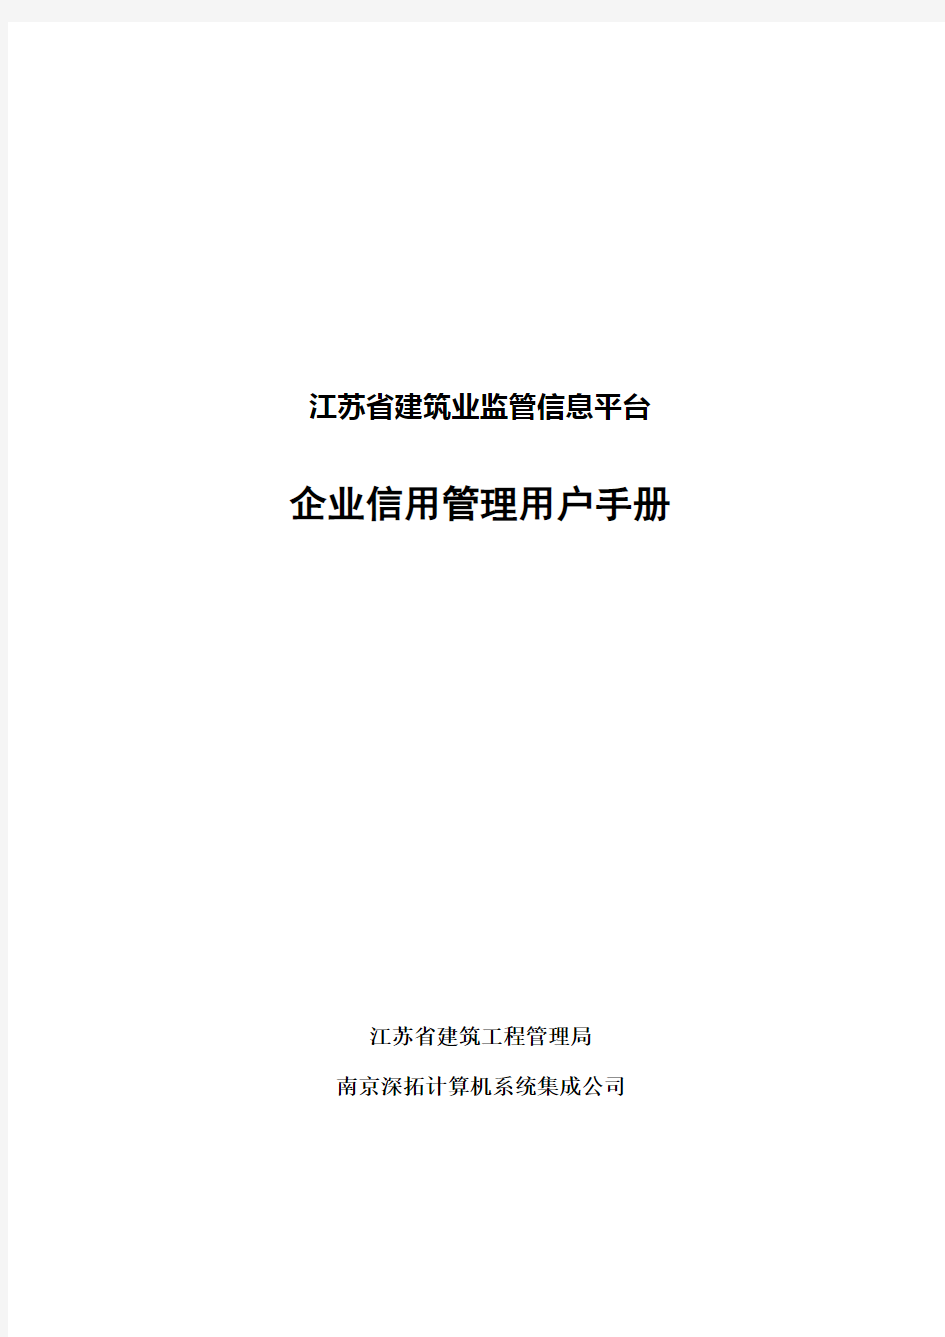 江苏省建筑业监管信息平台使用手册